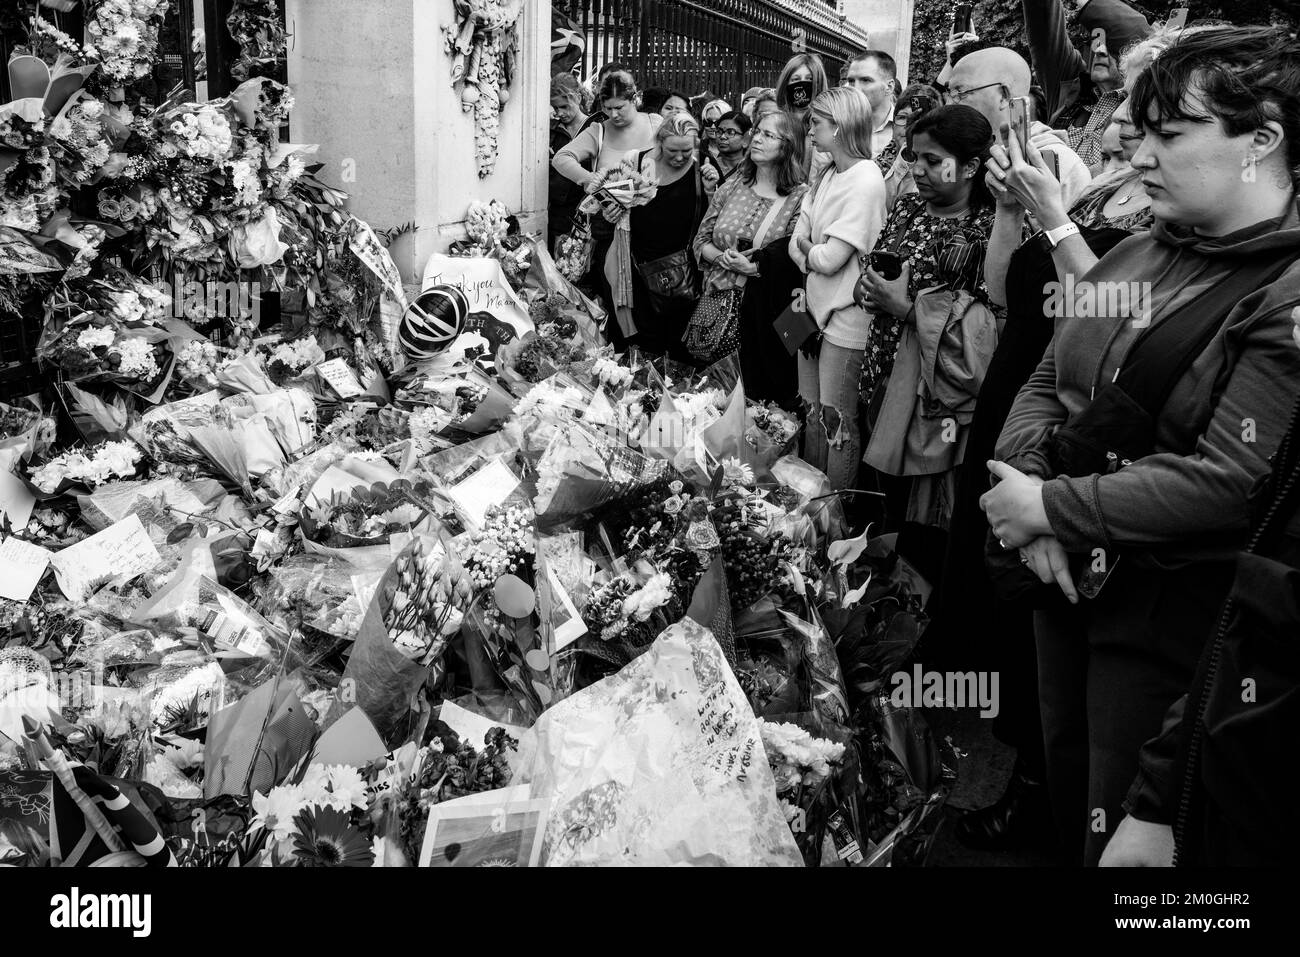 Die Briten versammeln sich vor dem Buckingham Palace, um Blumen zu legen und nach dem Tod von Königin Elizabeth II., London, Großbritannien, ihre Ehre zu erweisen. Stockfoto